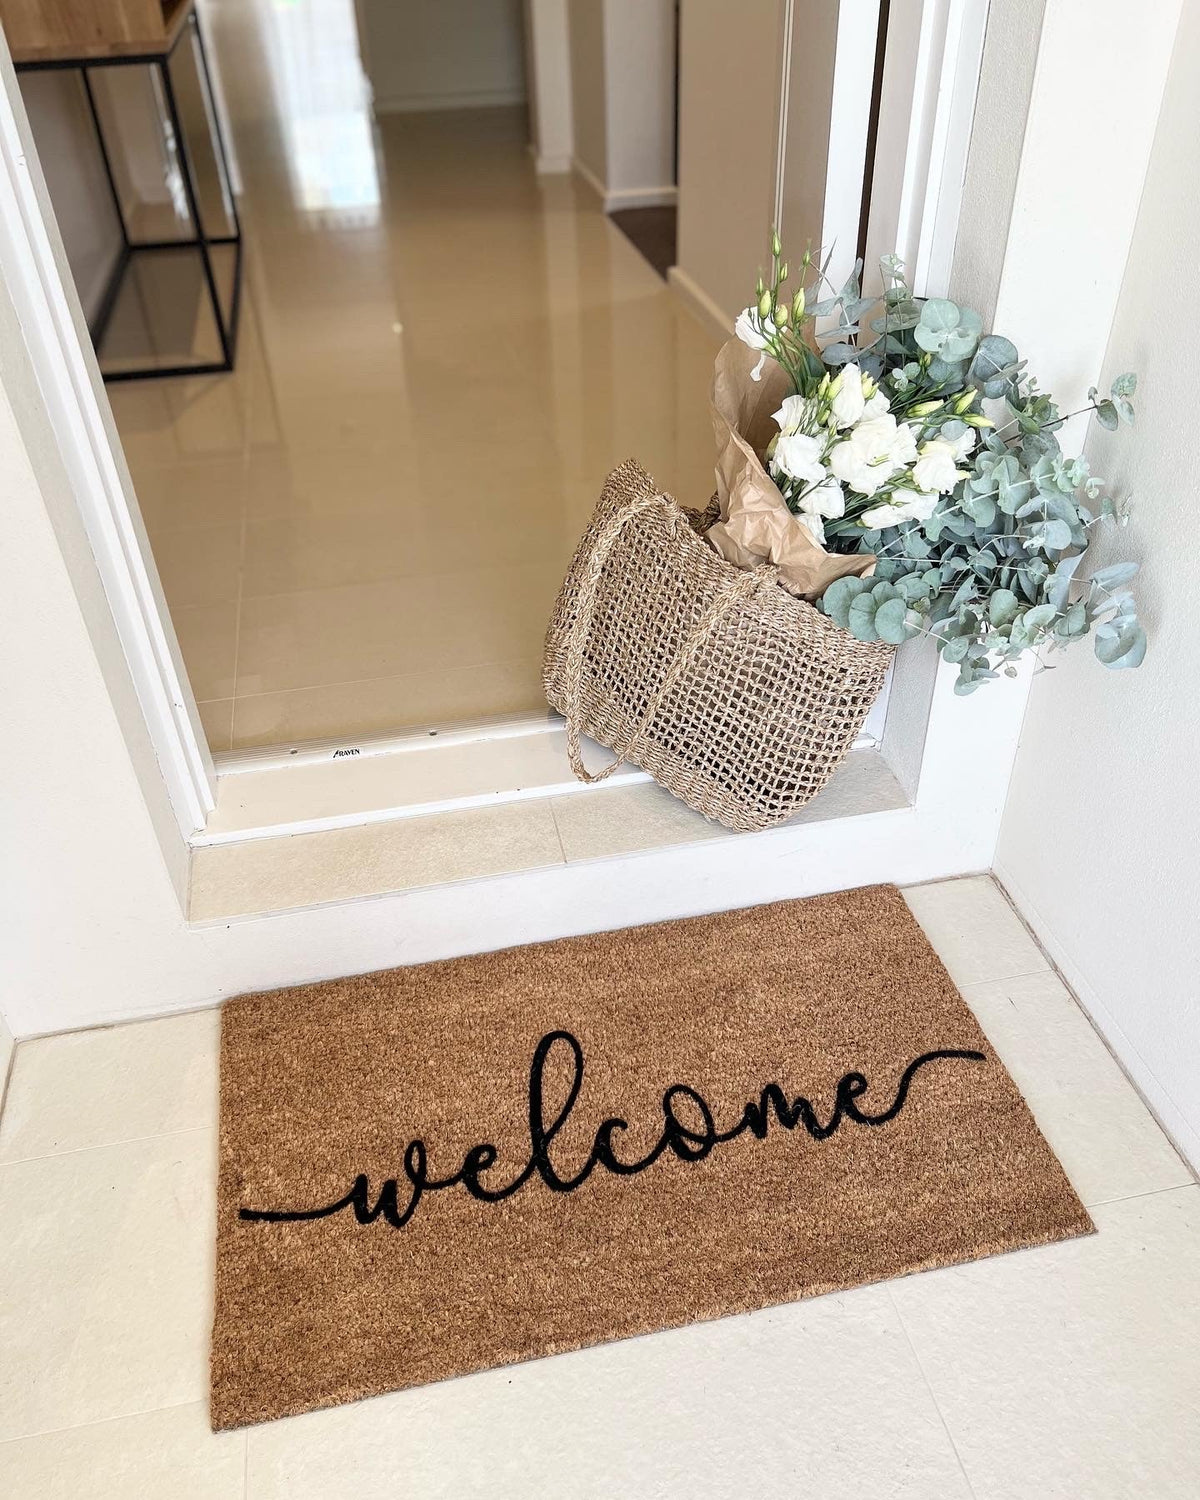 Welcome Doormat Embossed